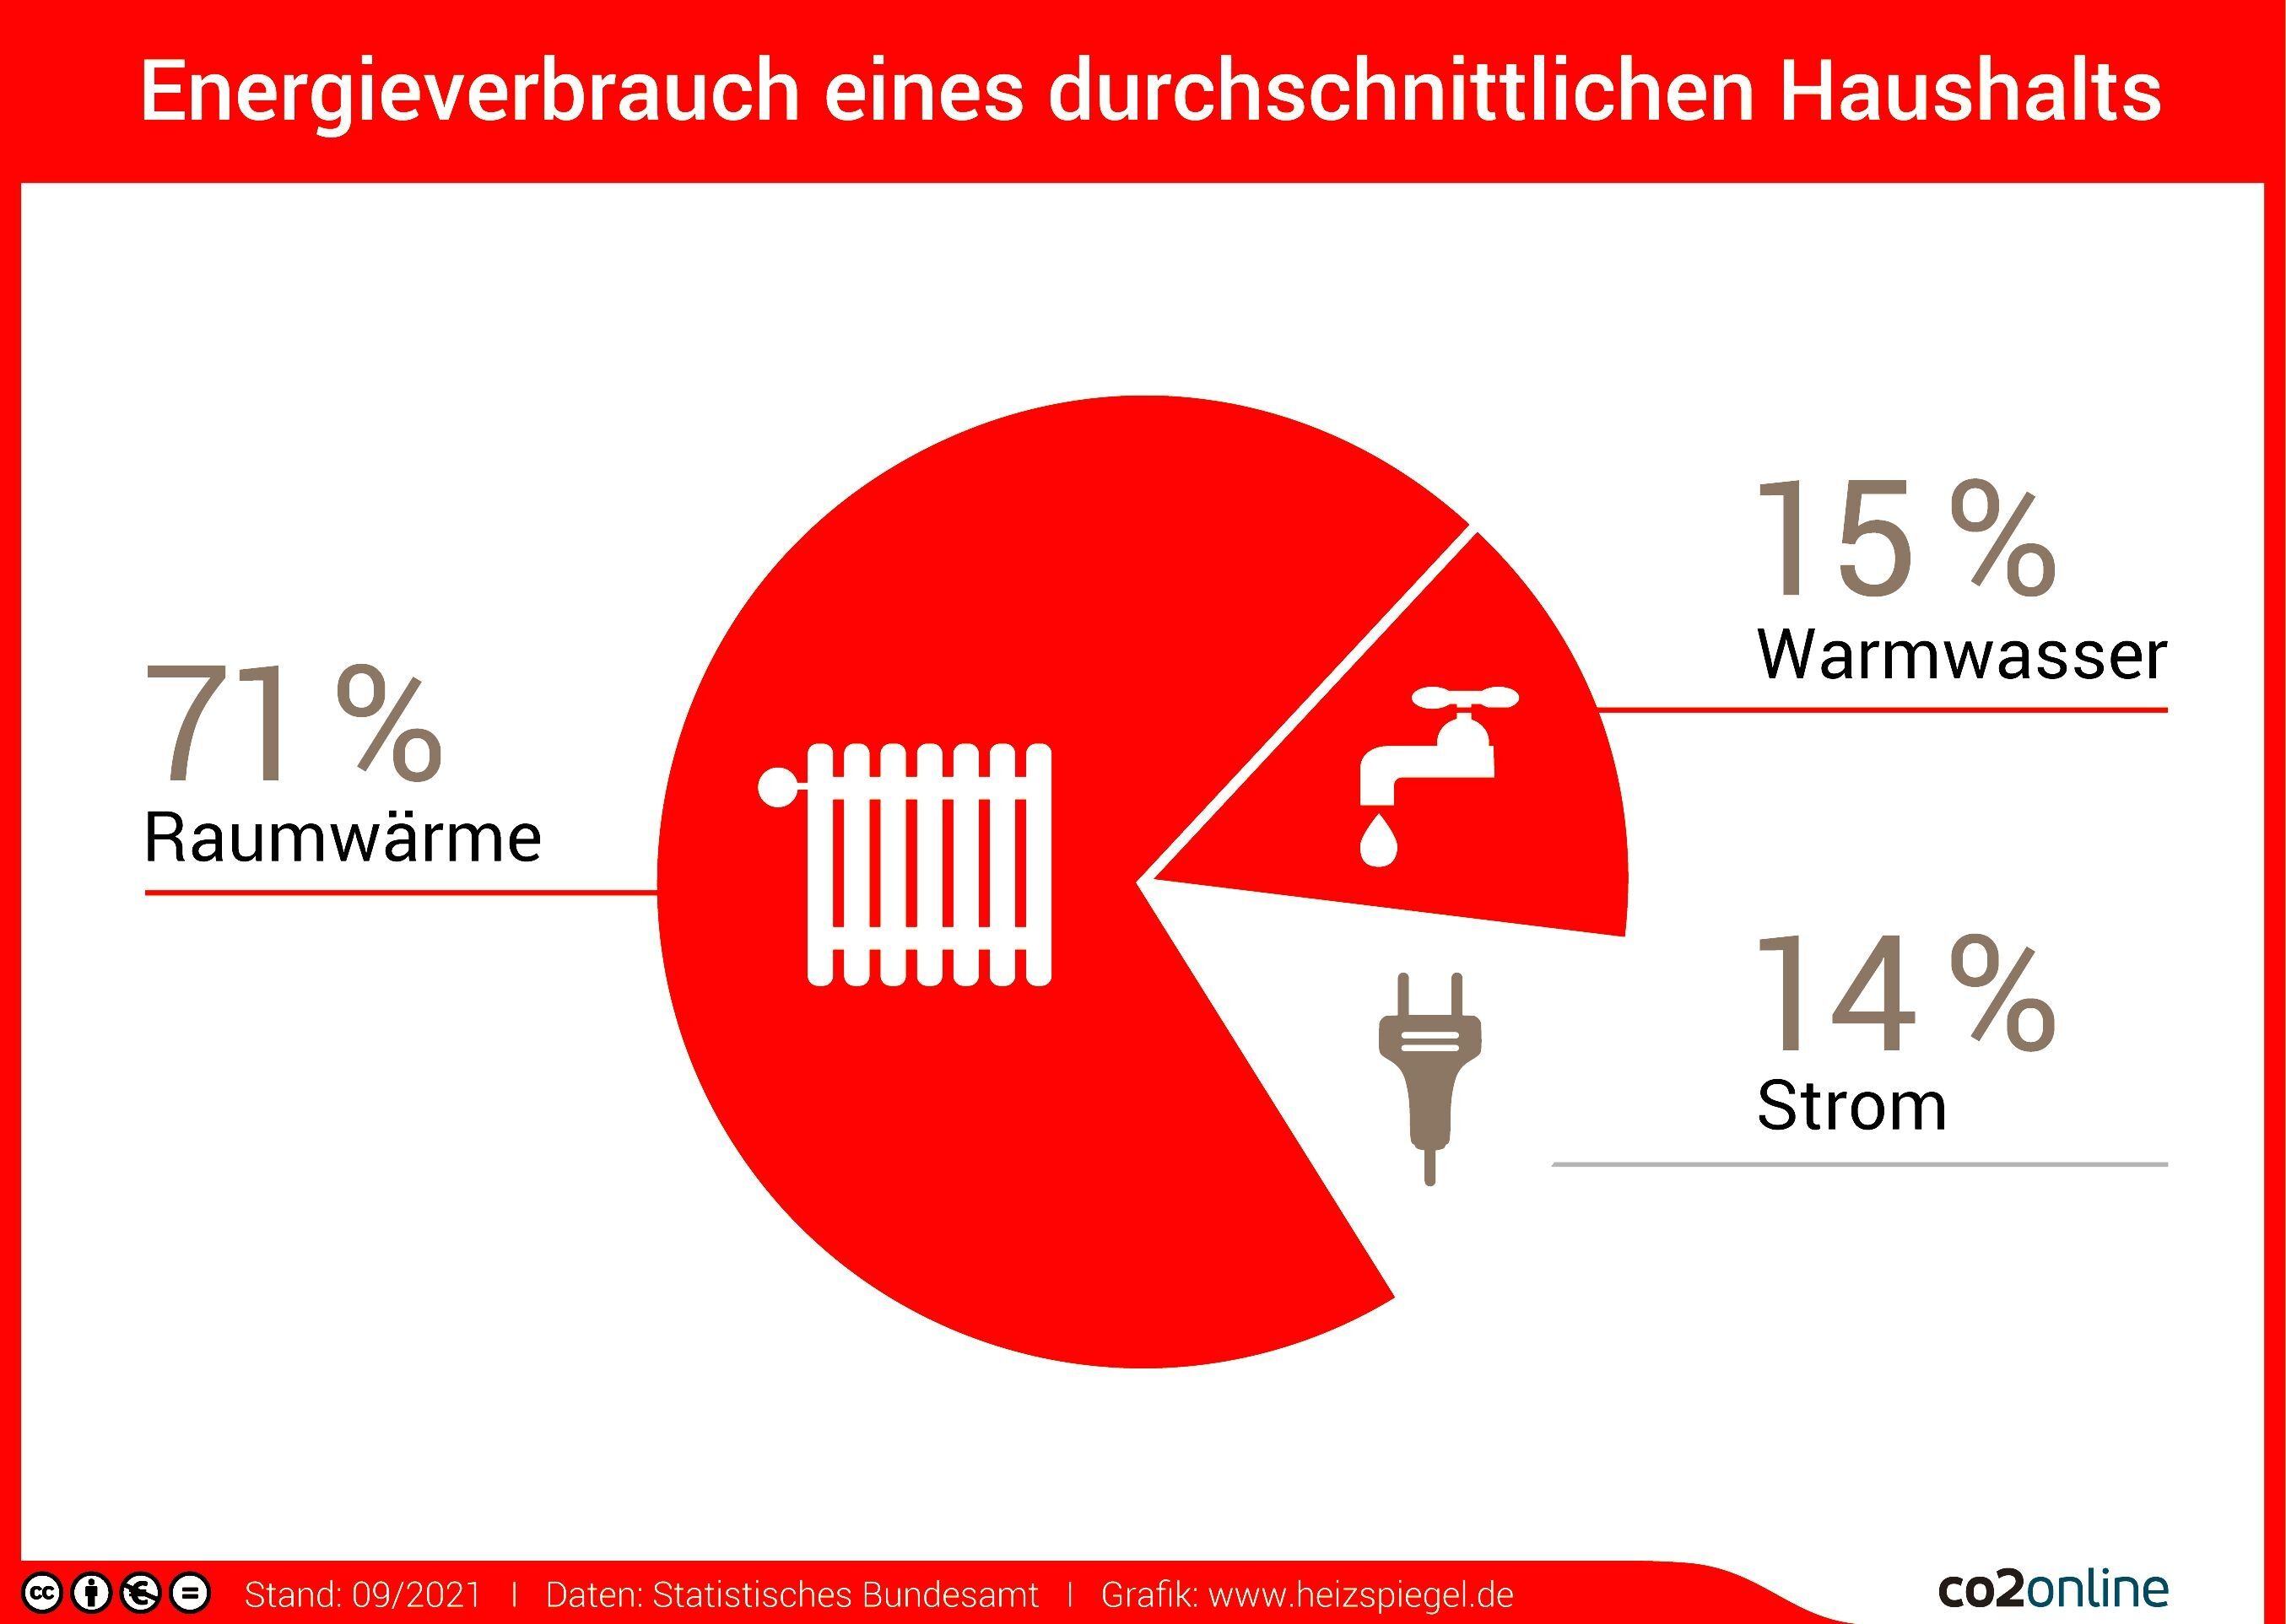 Energieverbrauch eines durchschnittlichen Haushalts. Grafik: www.co2online.de